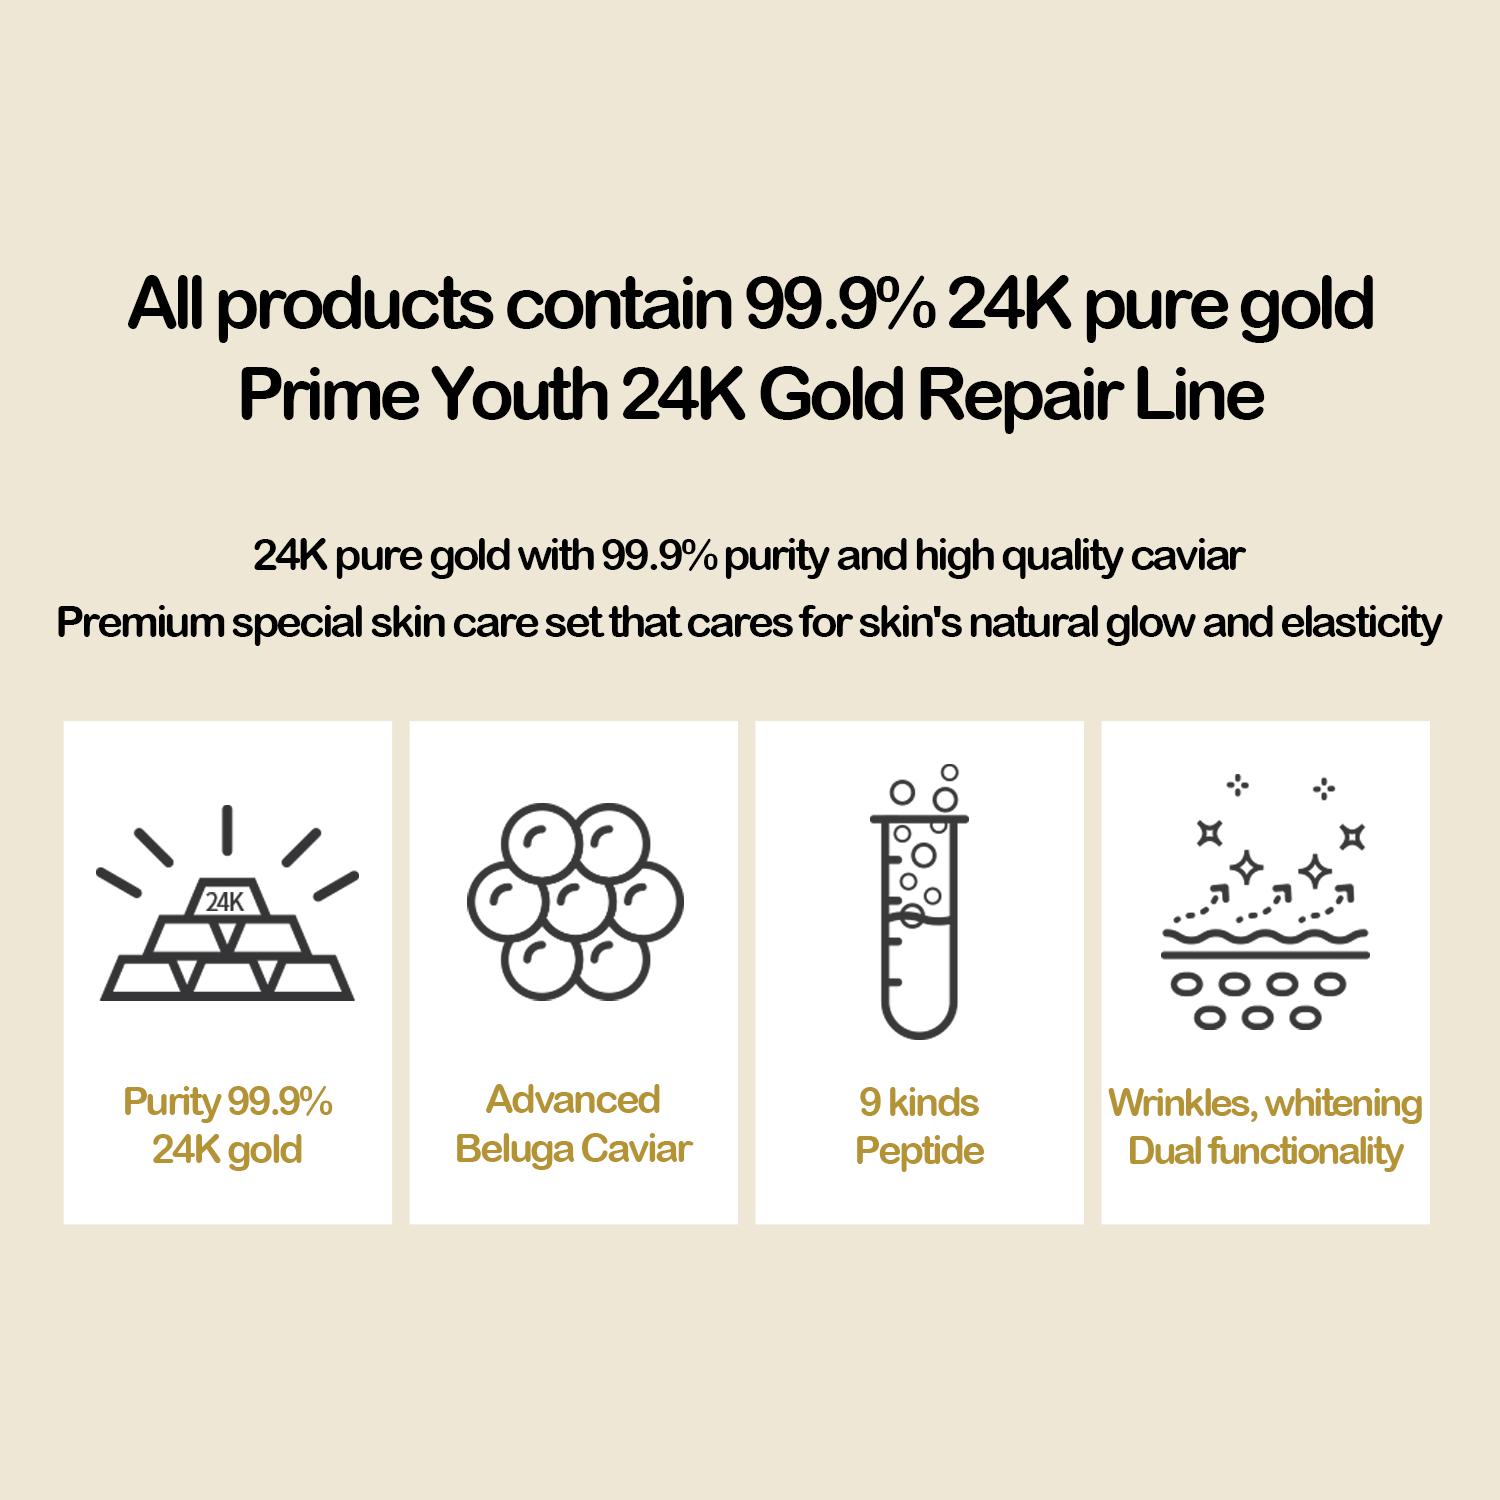 Pelembab Wajah Gold | Prime Youth 24k Gold Emulsion